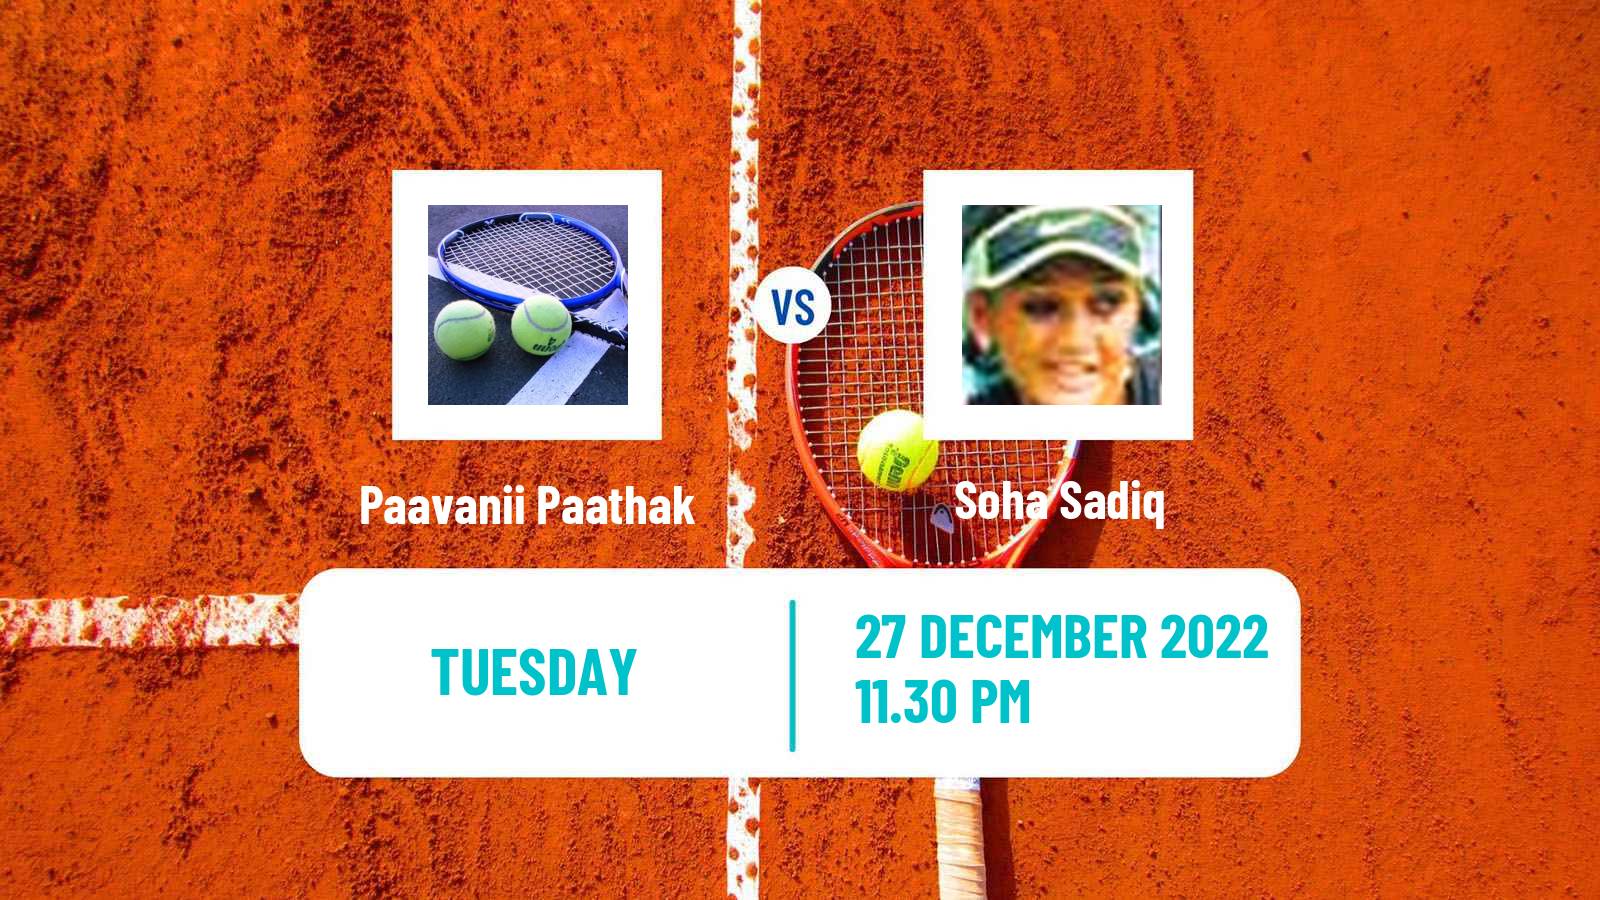 Tennis ITF Tournaments Paavanii Paathak - Soha Sadiq